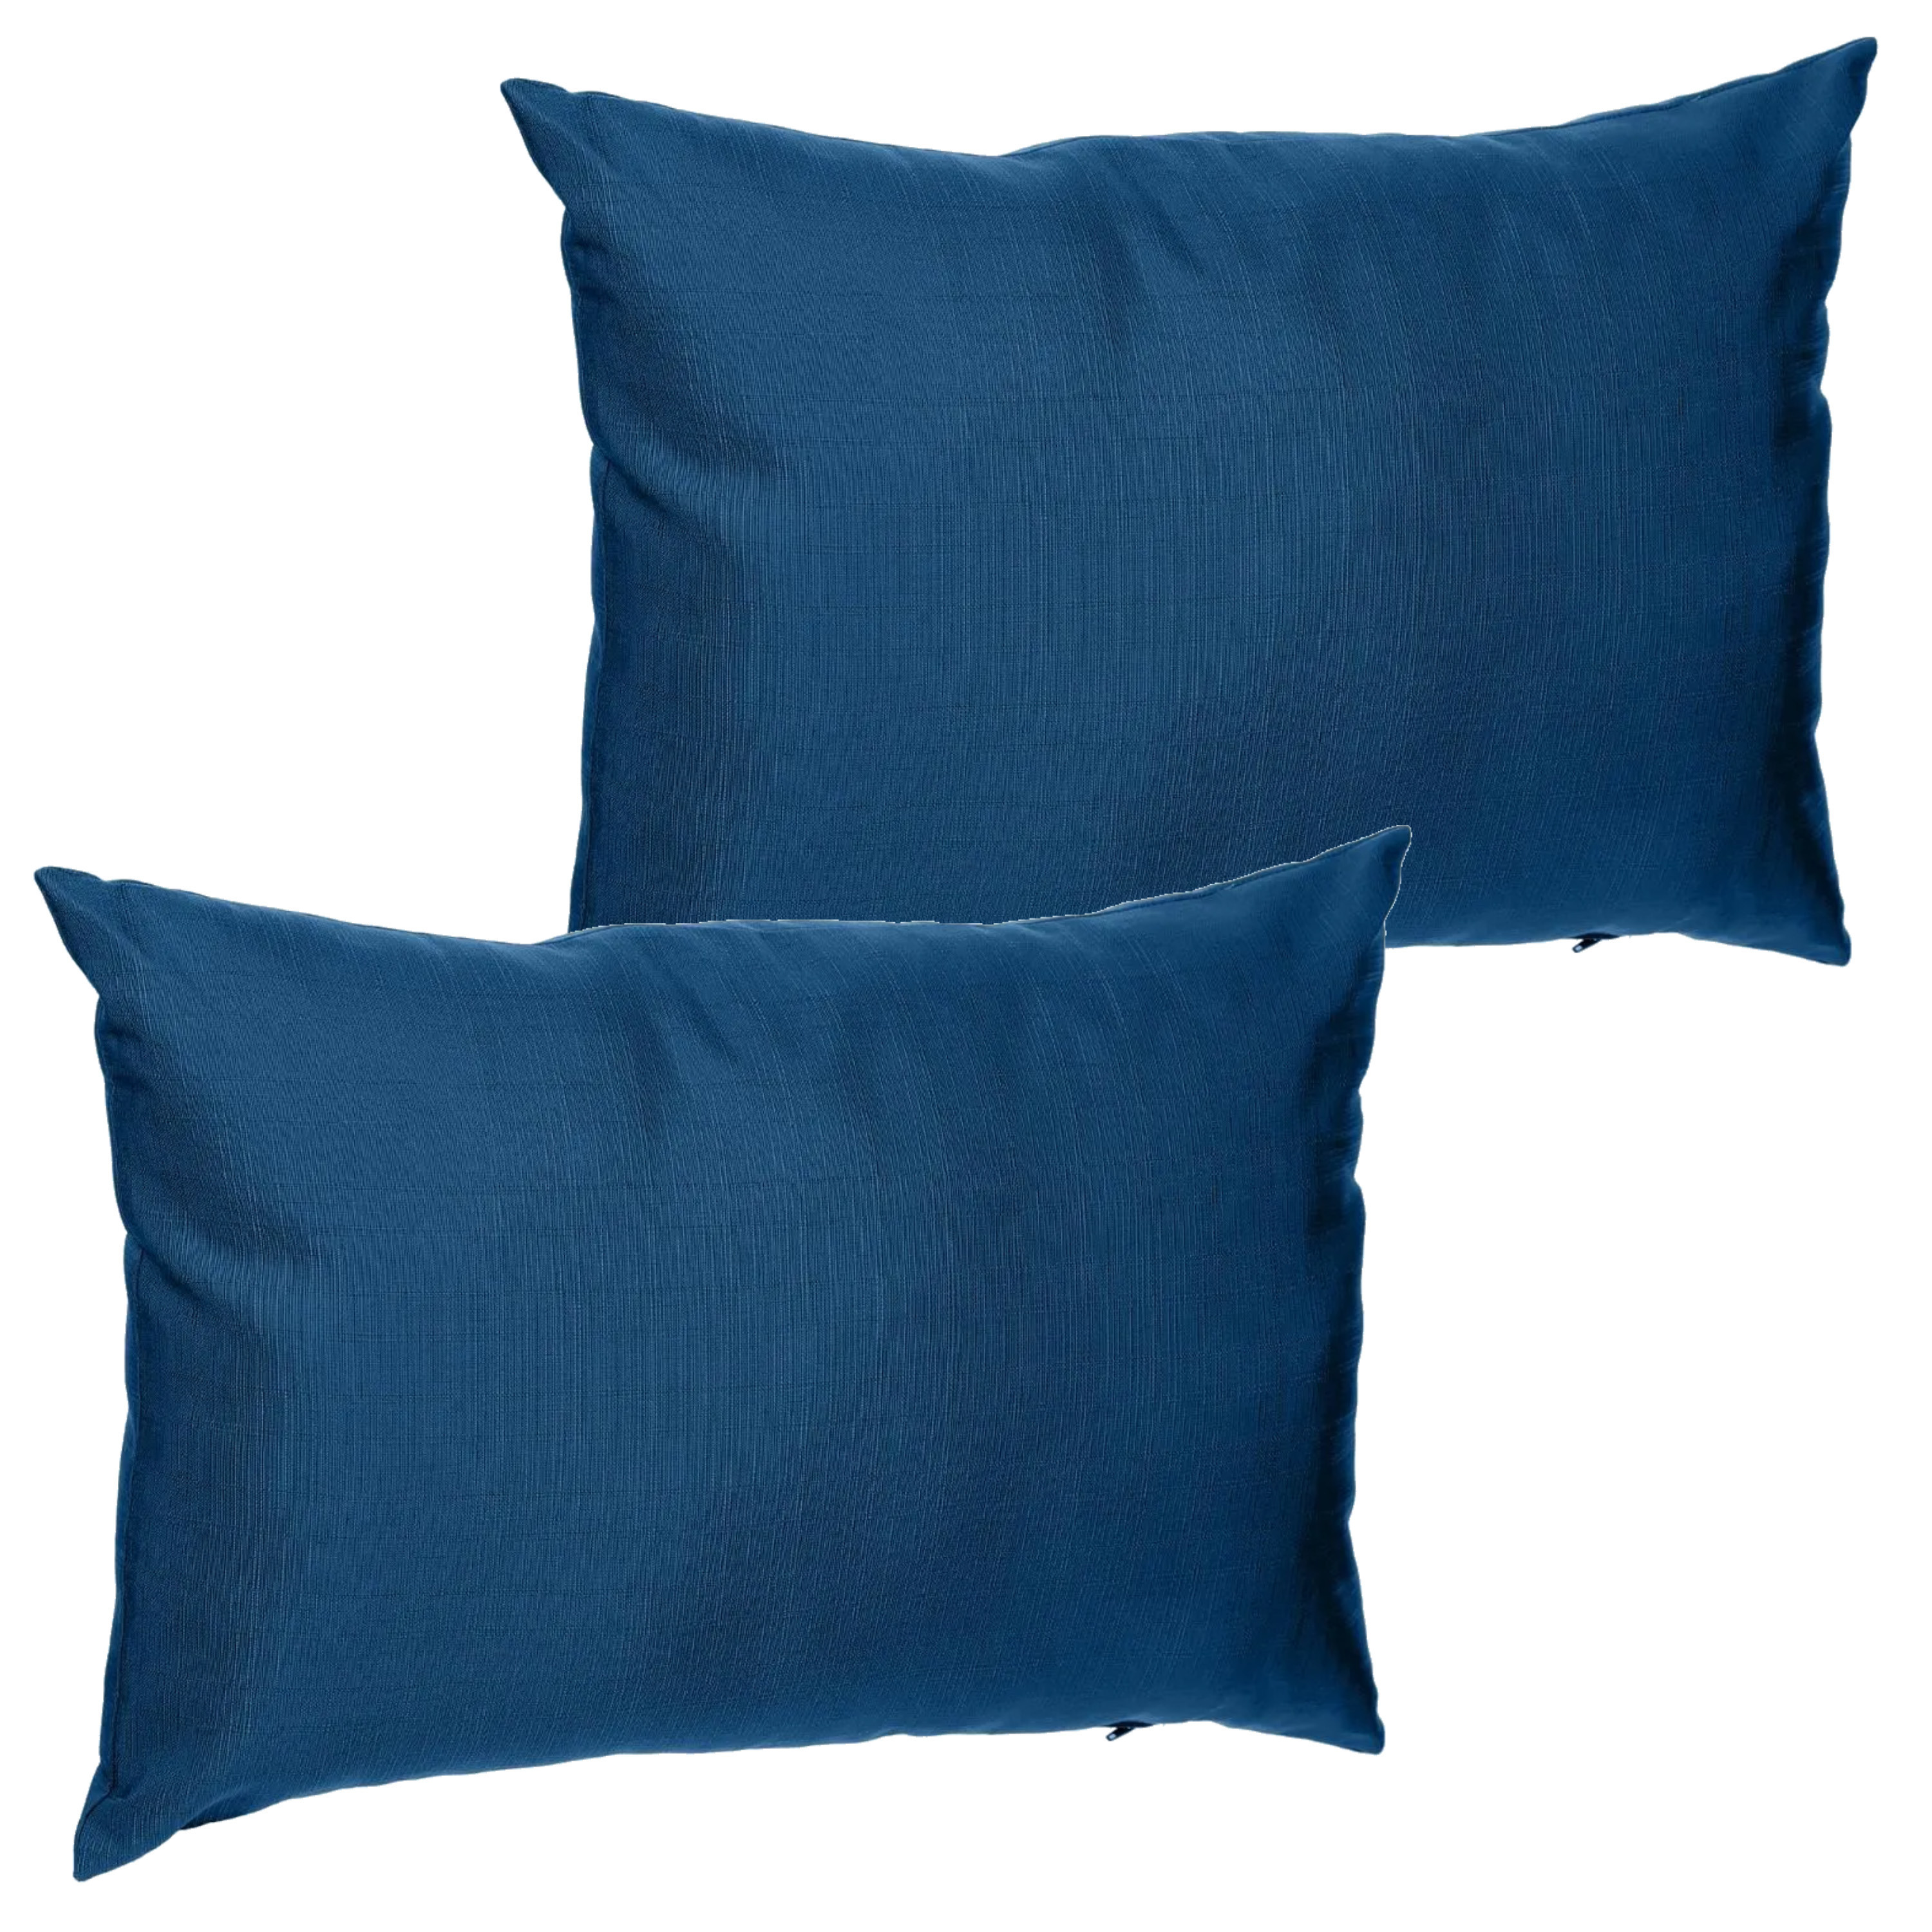 Set van 4x stuks bank-sier-tuin kussens voor binnen en buiten in de kleur indigo blauw 30 x 50 x 10